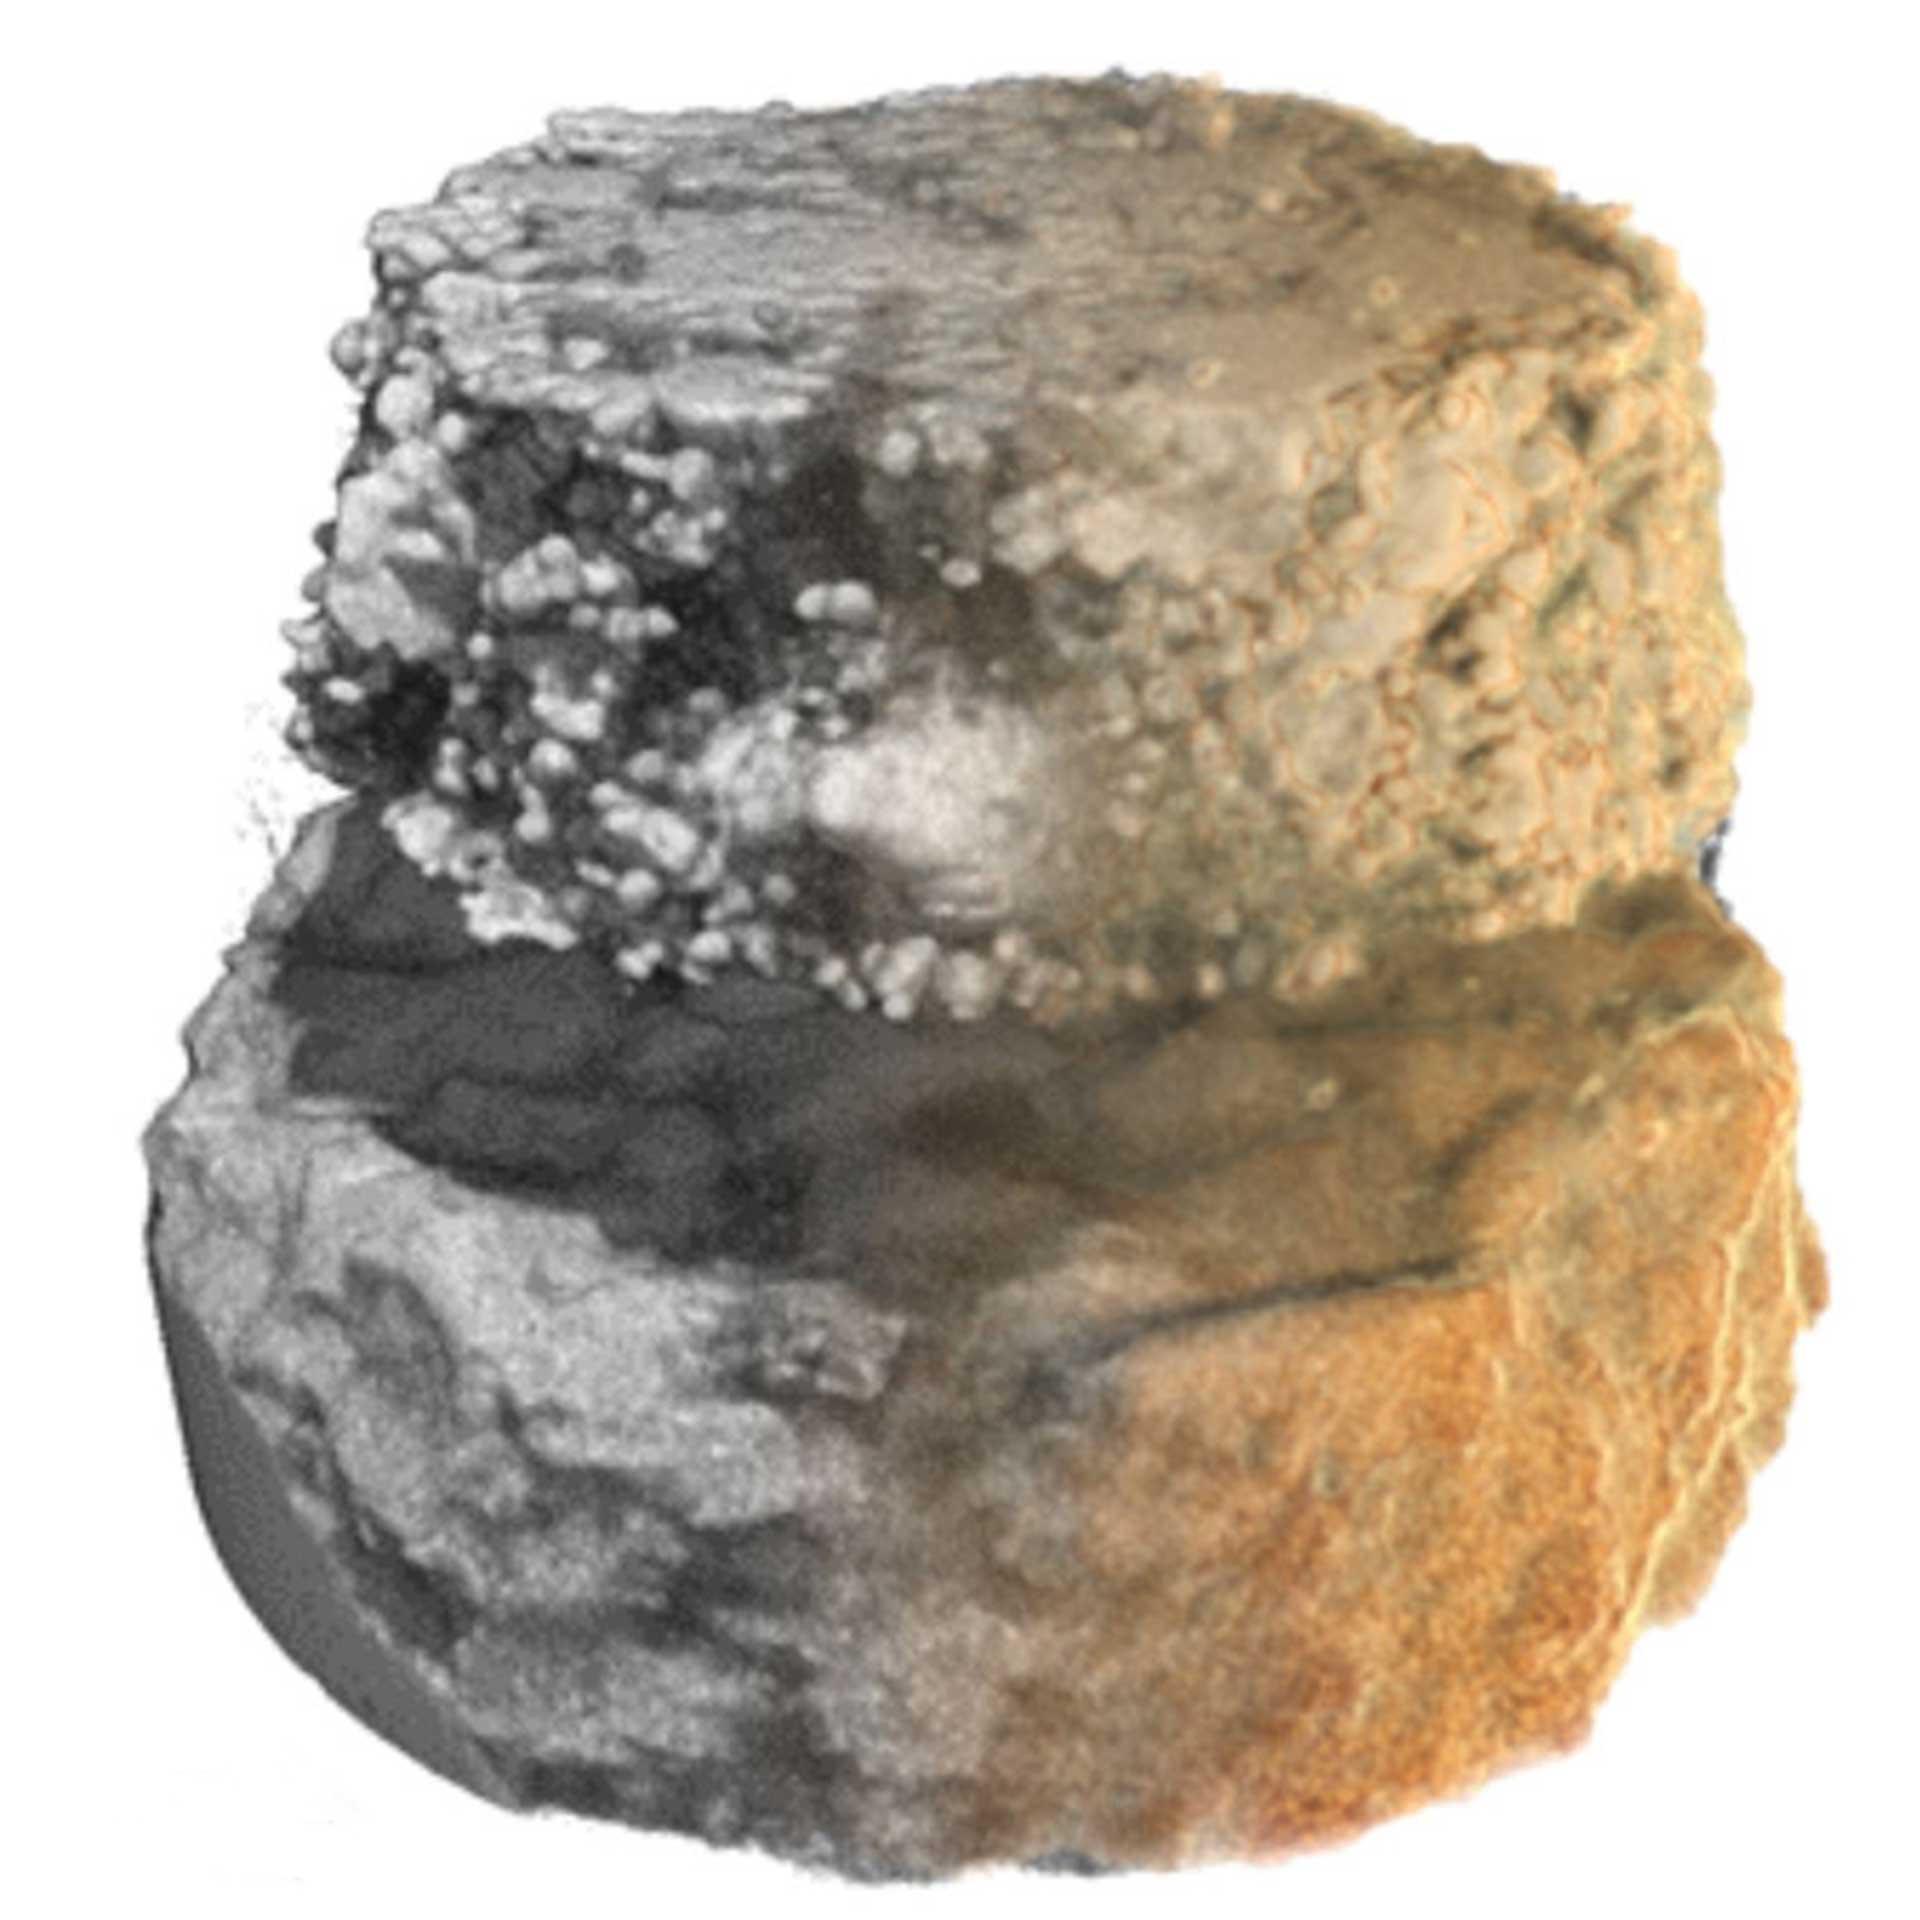 岩石薄片からマルチスケールワークフローで抽出した炭酸塩のマイクロピラー微細空隙（試料幅：50 µm）。